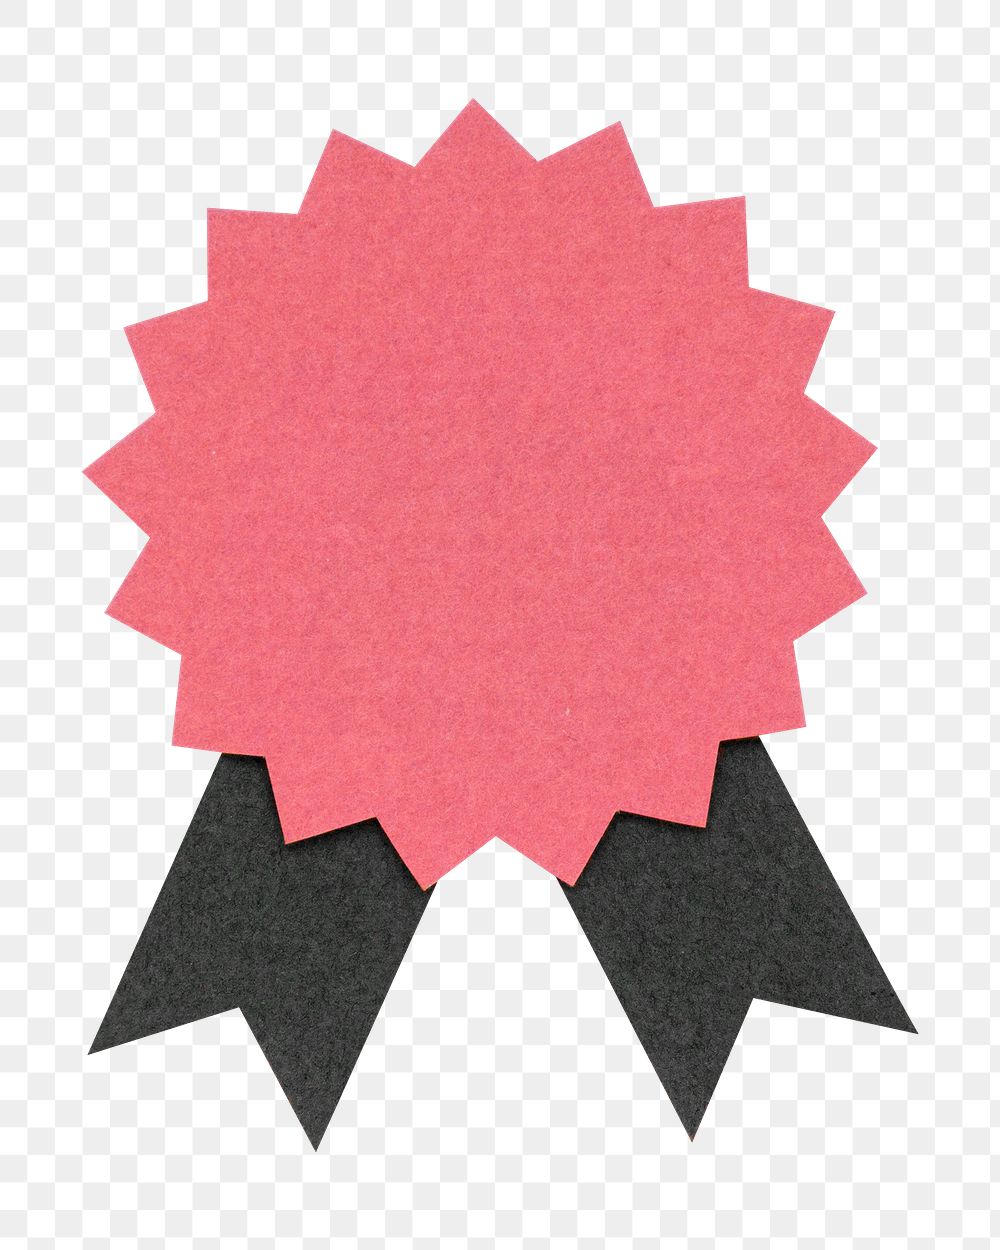 Pink prize badge paper craft design element